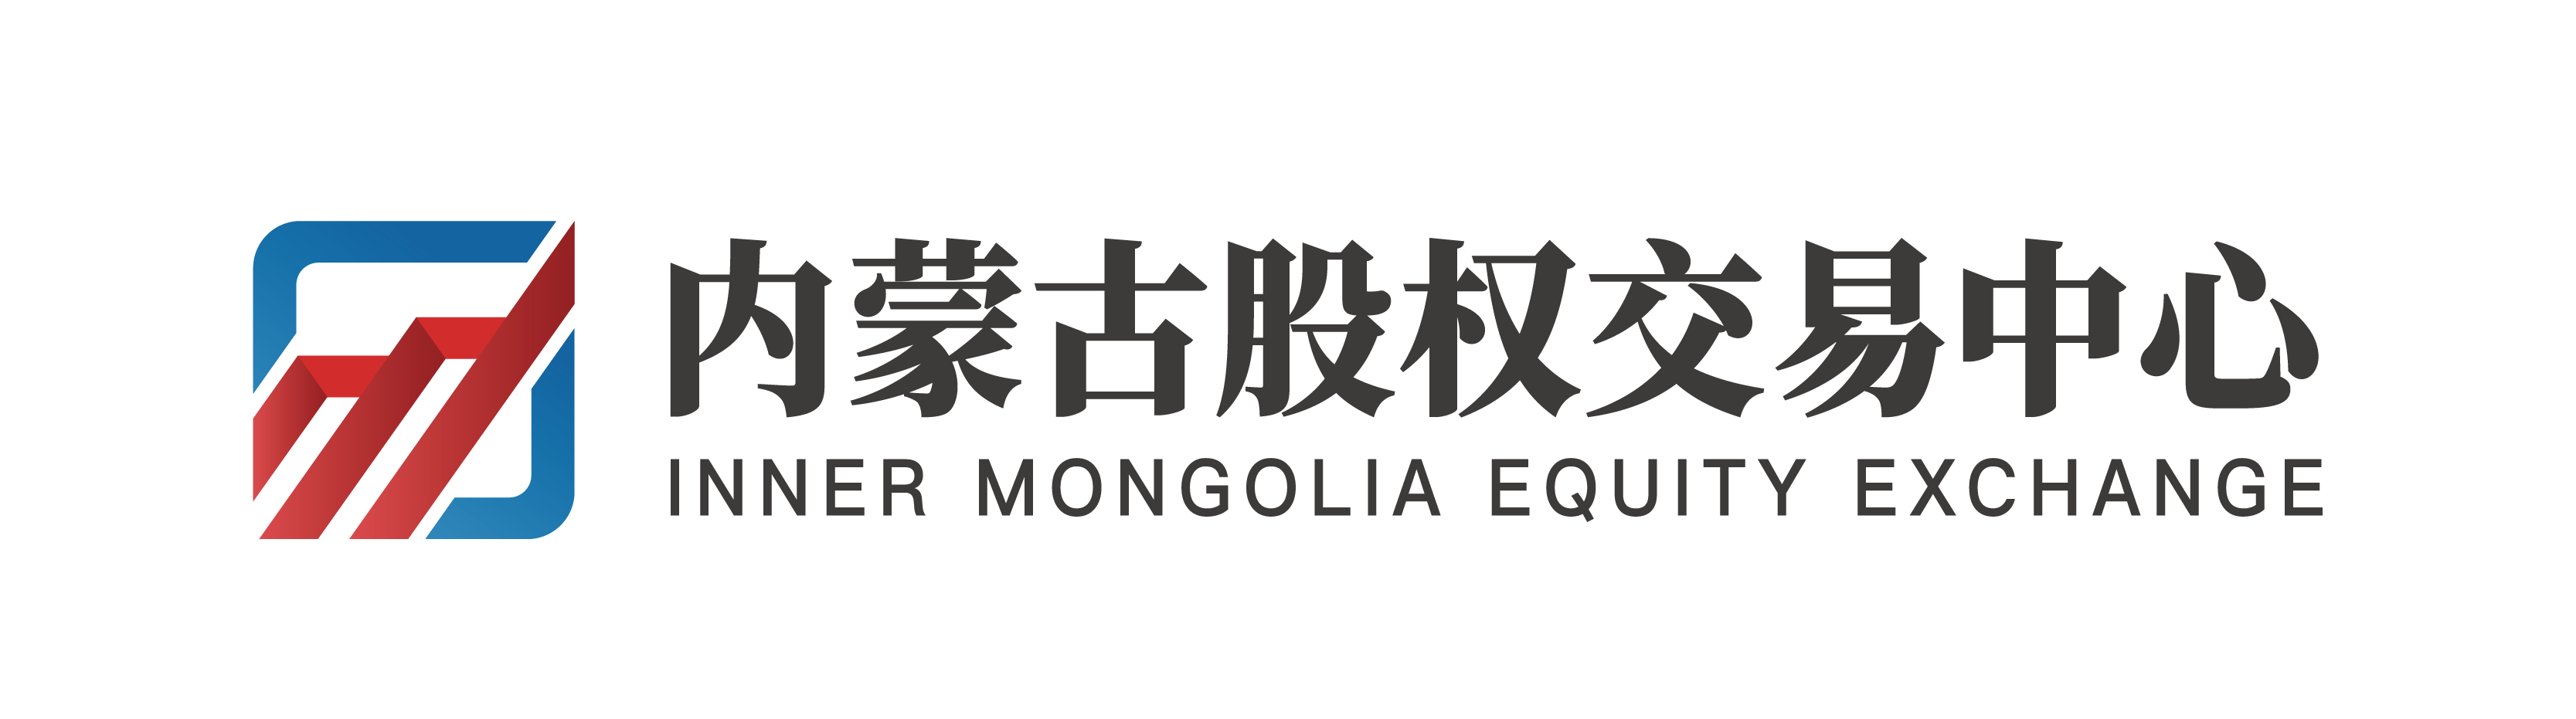 内蒙古股权交易中心